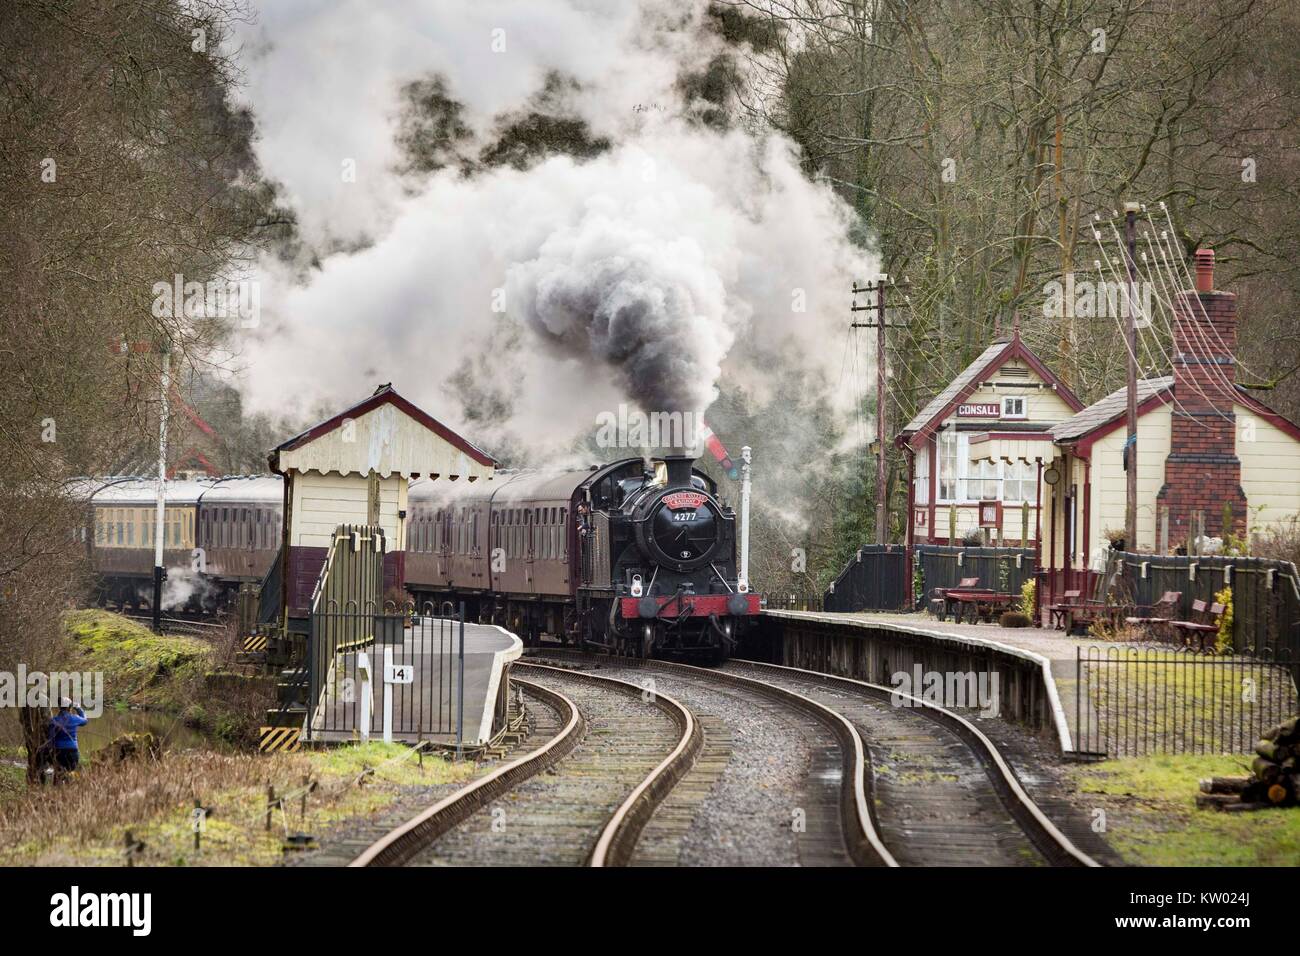 A steam train  on The Churnett Valley Railway near  Consall Station. Stock Photo